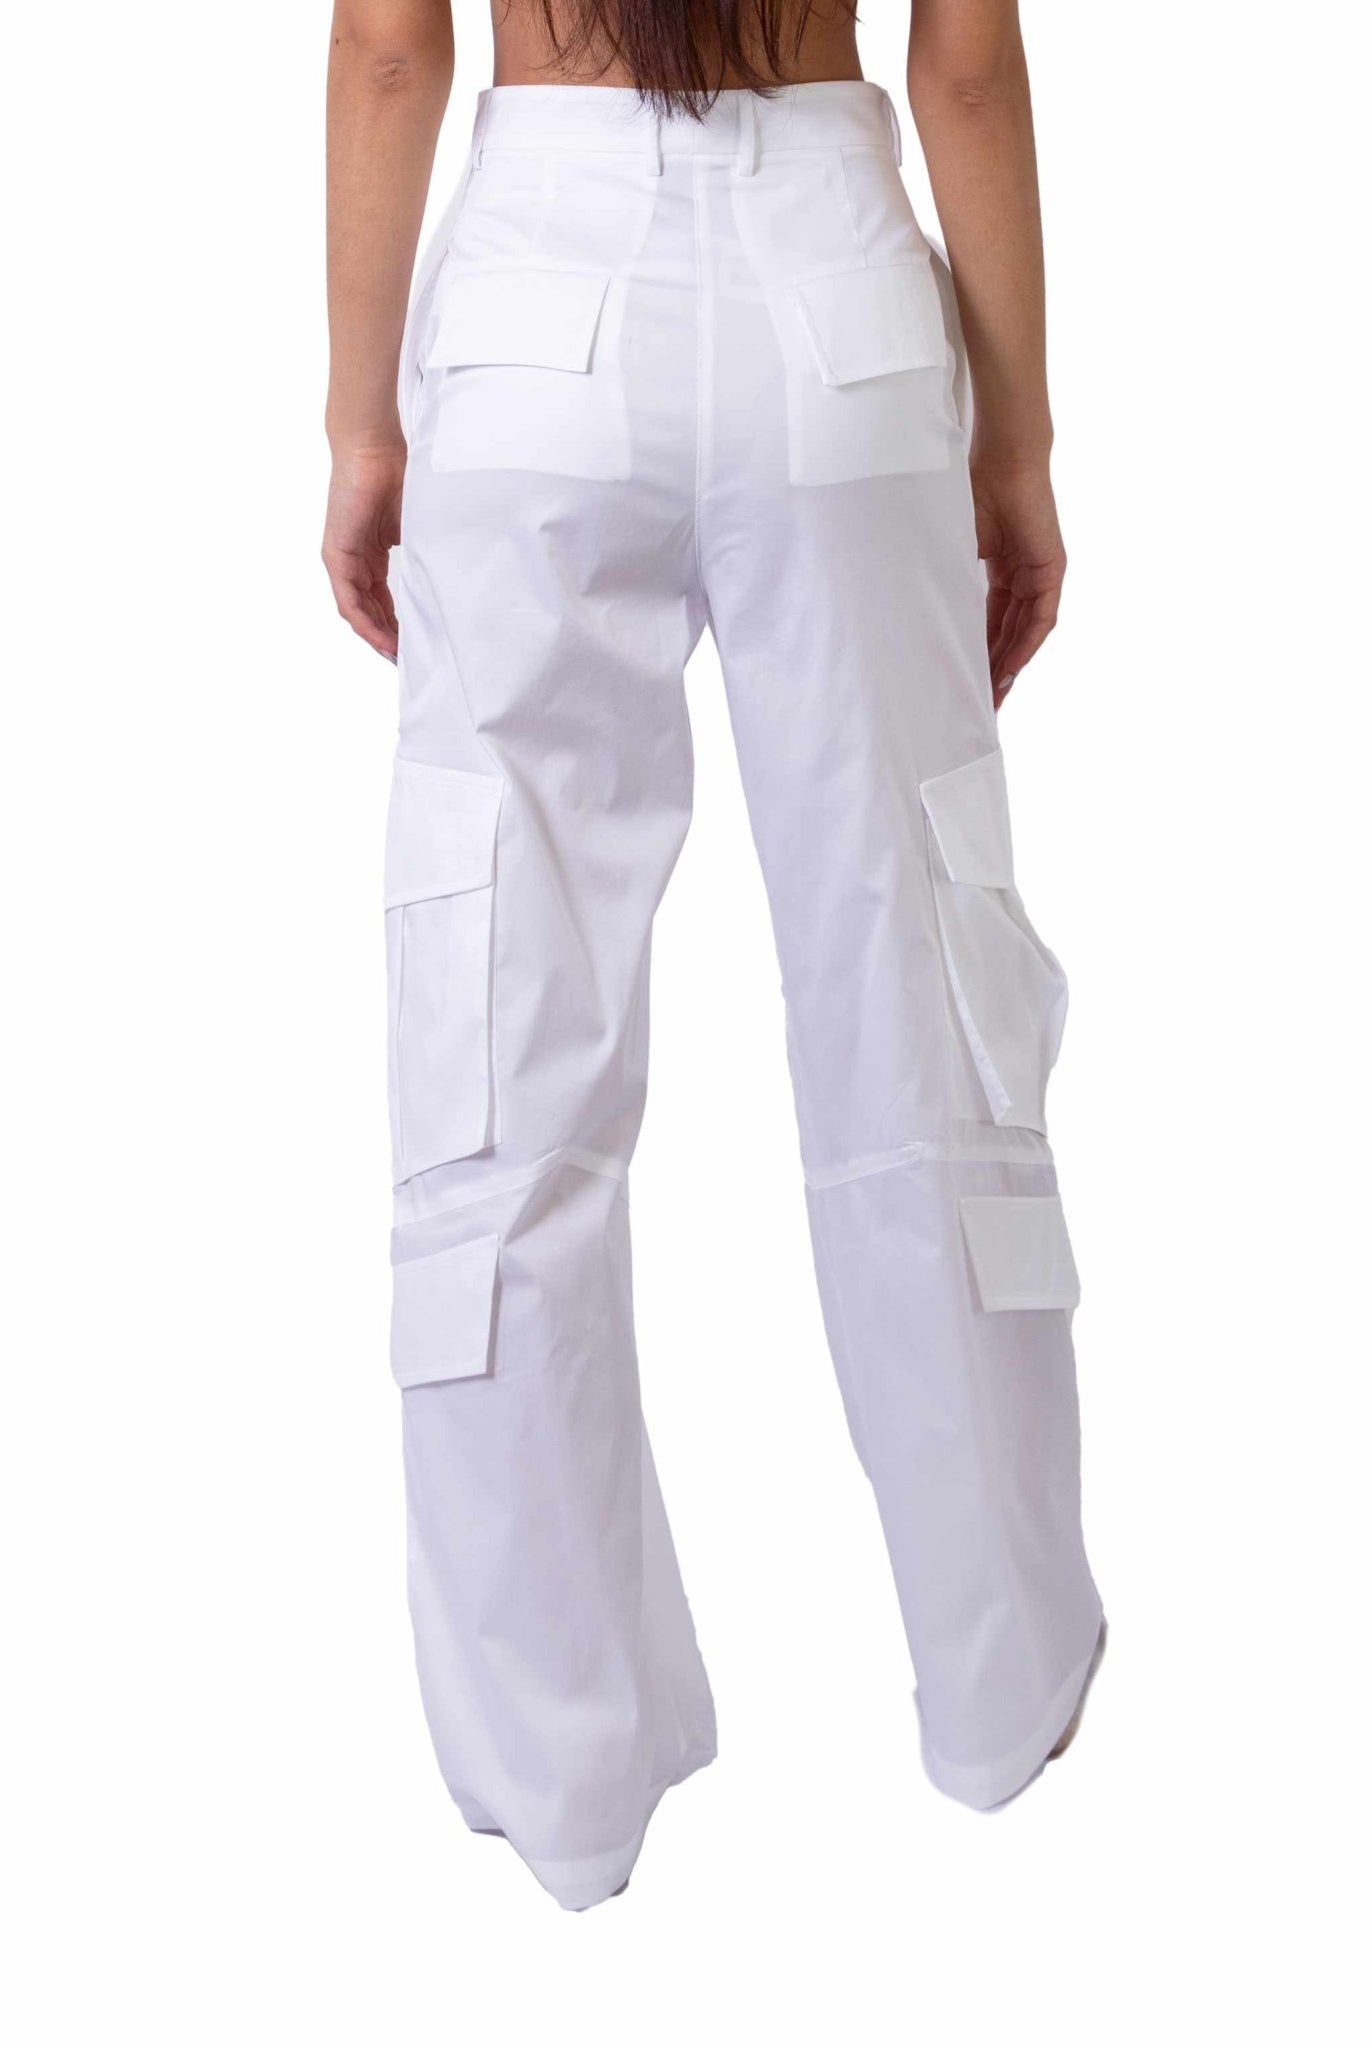 Pantalone cargo in cotone leggero bianco- Alice Miller -Giorgioquinto